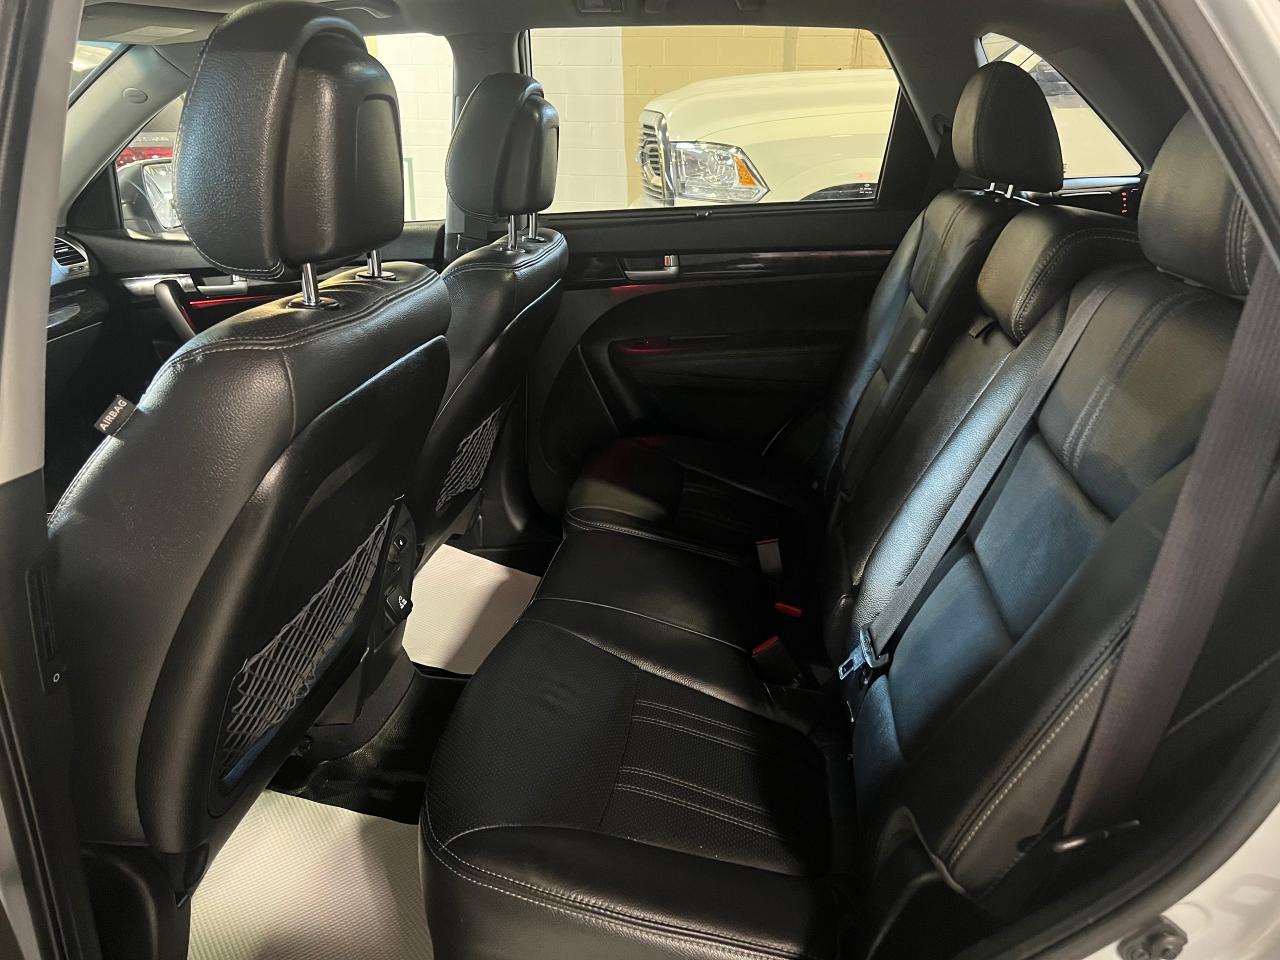 2014 Kia Sorento AWD - 4DR V6 AUTO -SX W-3RD ROW - 7 SEATER - Photo #35